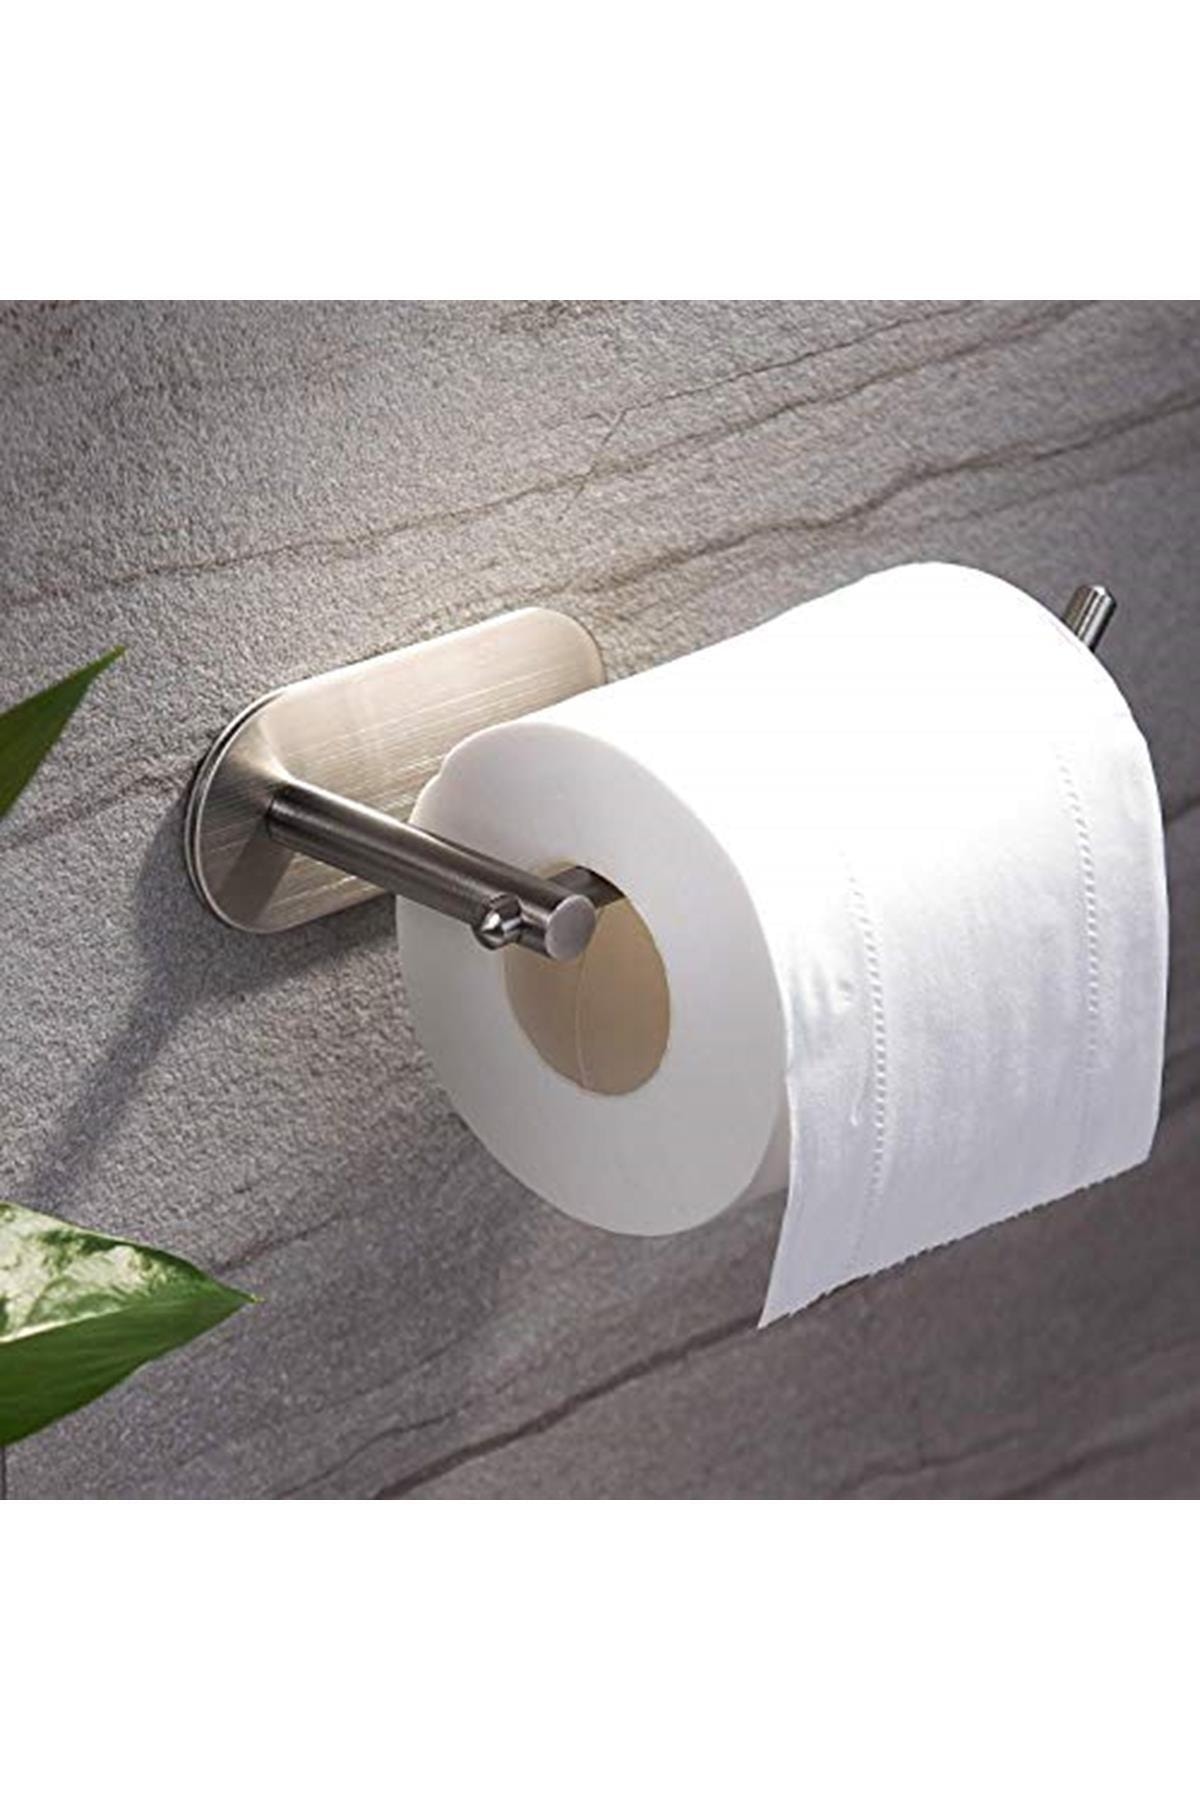 DELTAHOME Paslanmaz Çelik Tuvalet Kağıtlığı Aparatı Tuvalet Kağıdı Standı Yapışkanlı Sistem Model: